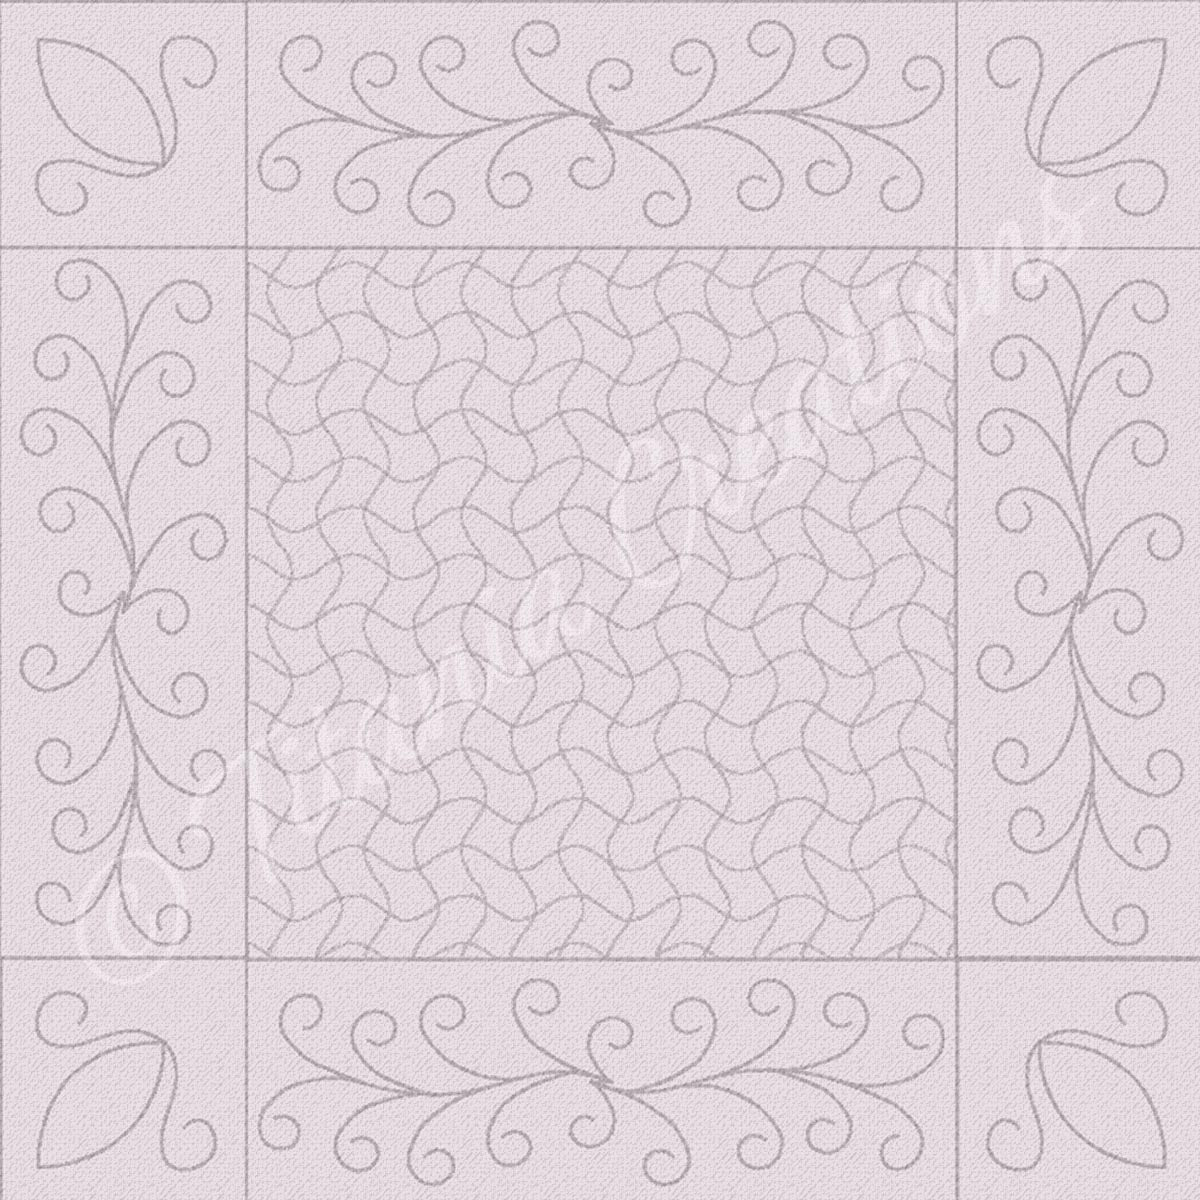 Flourish Quilt Blocks, Sashing and Corners  Set 4x4 5x5 6x6 7x7 8x8